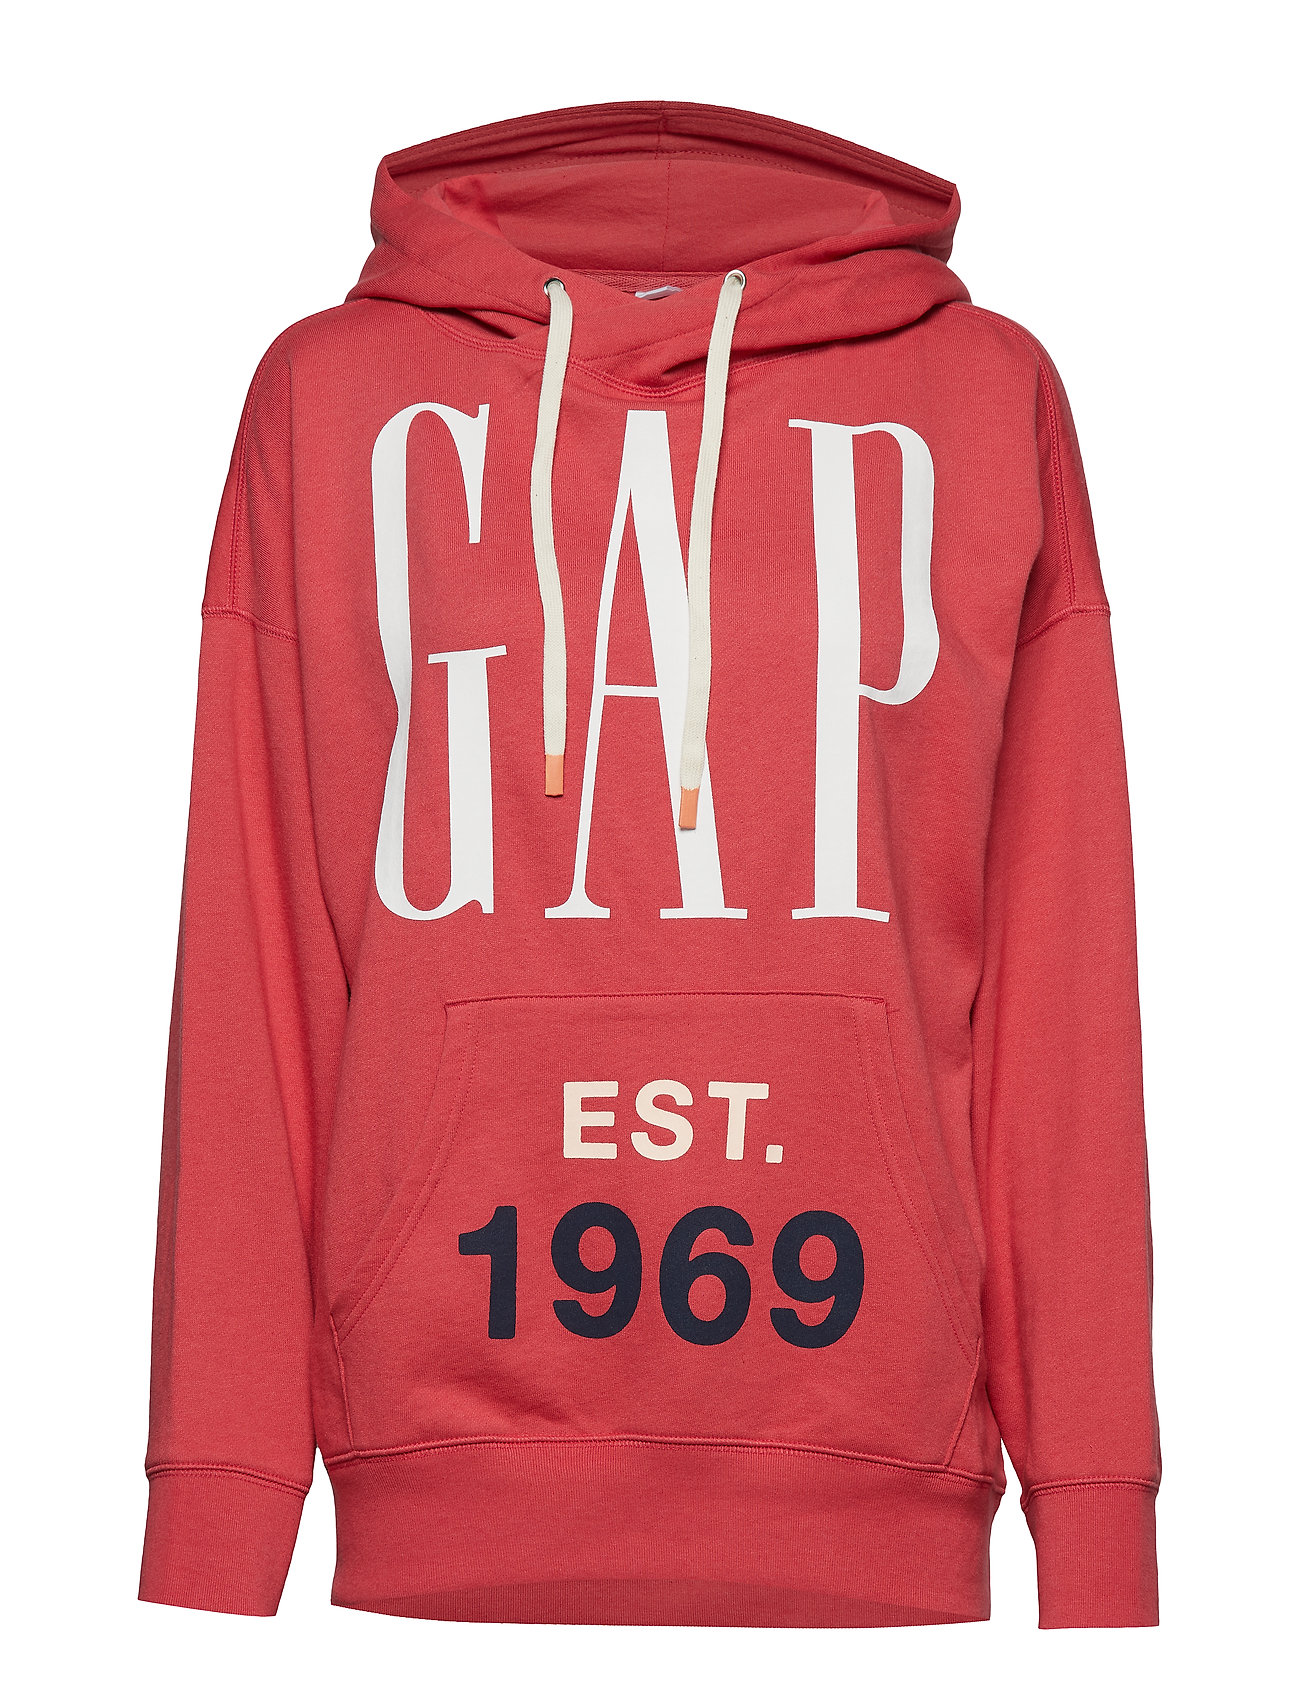 gap 1969 hoodie